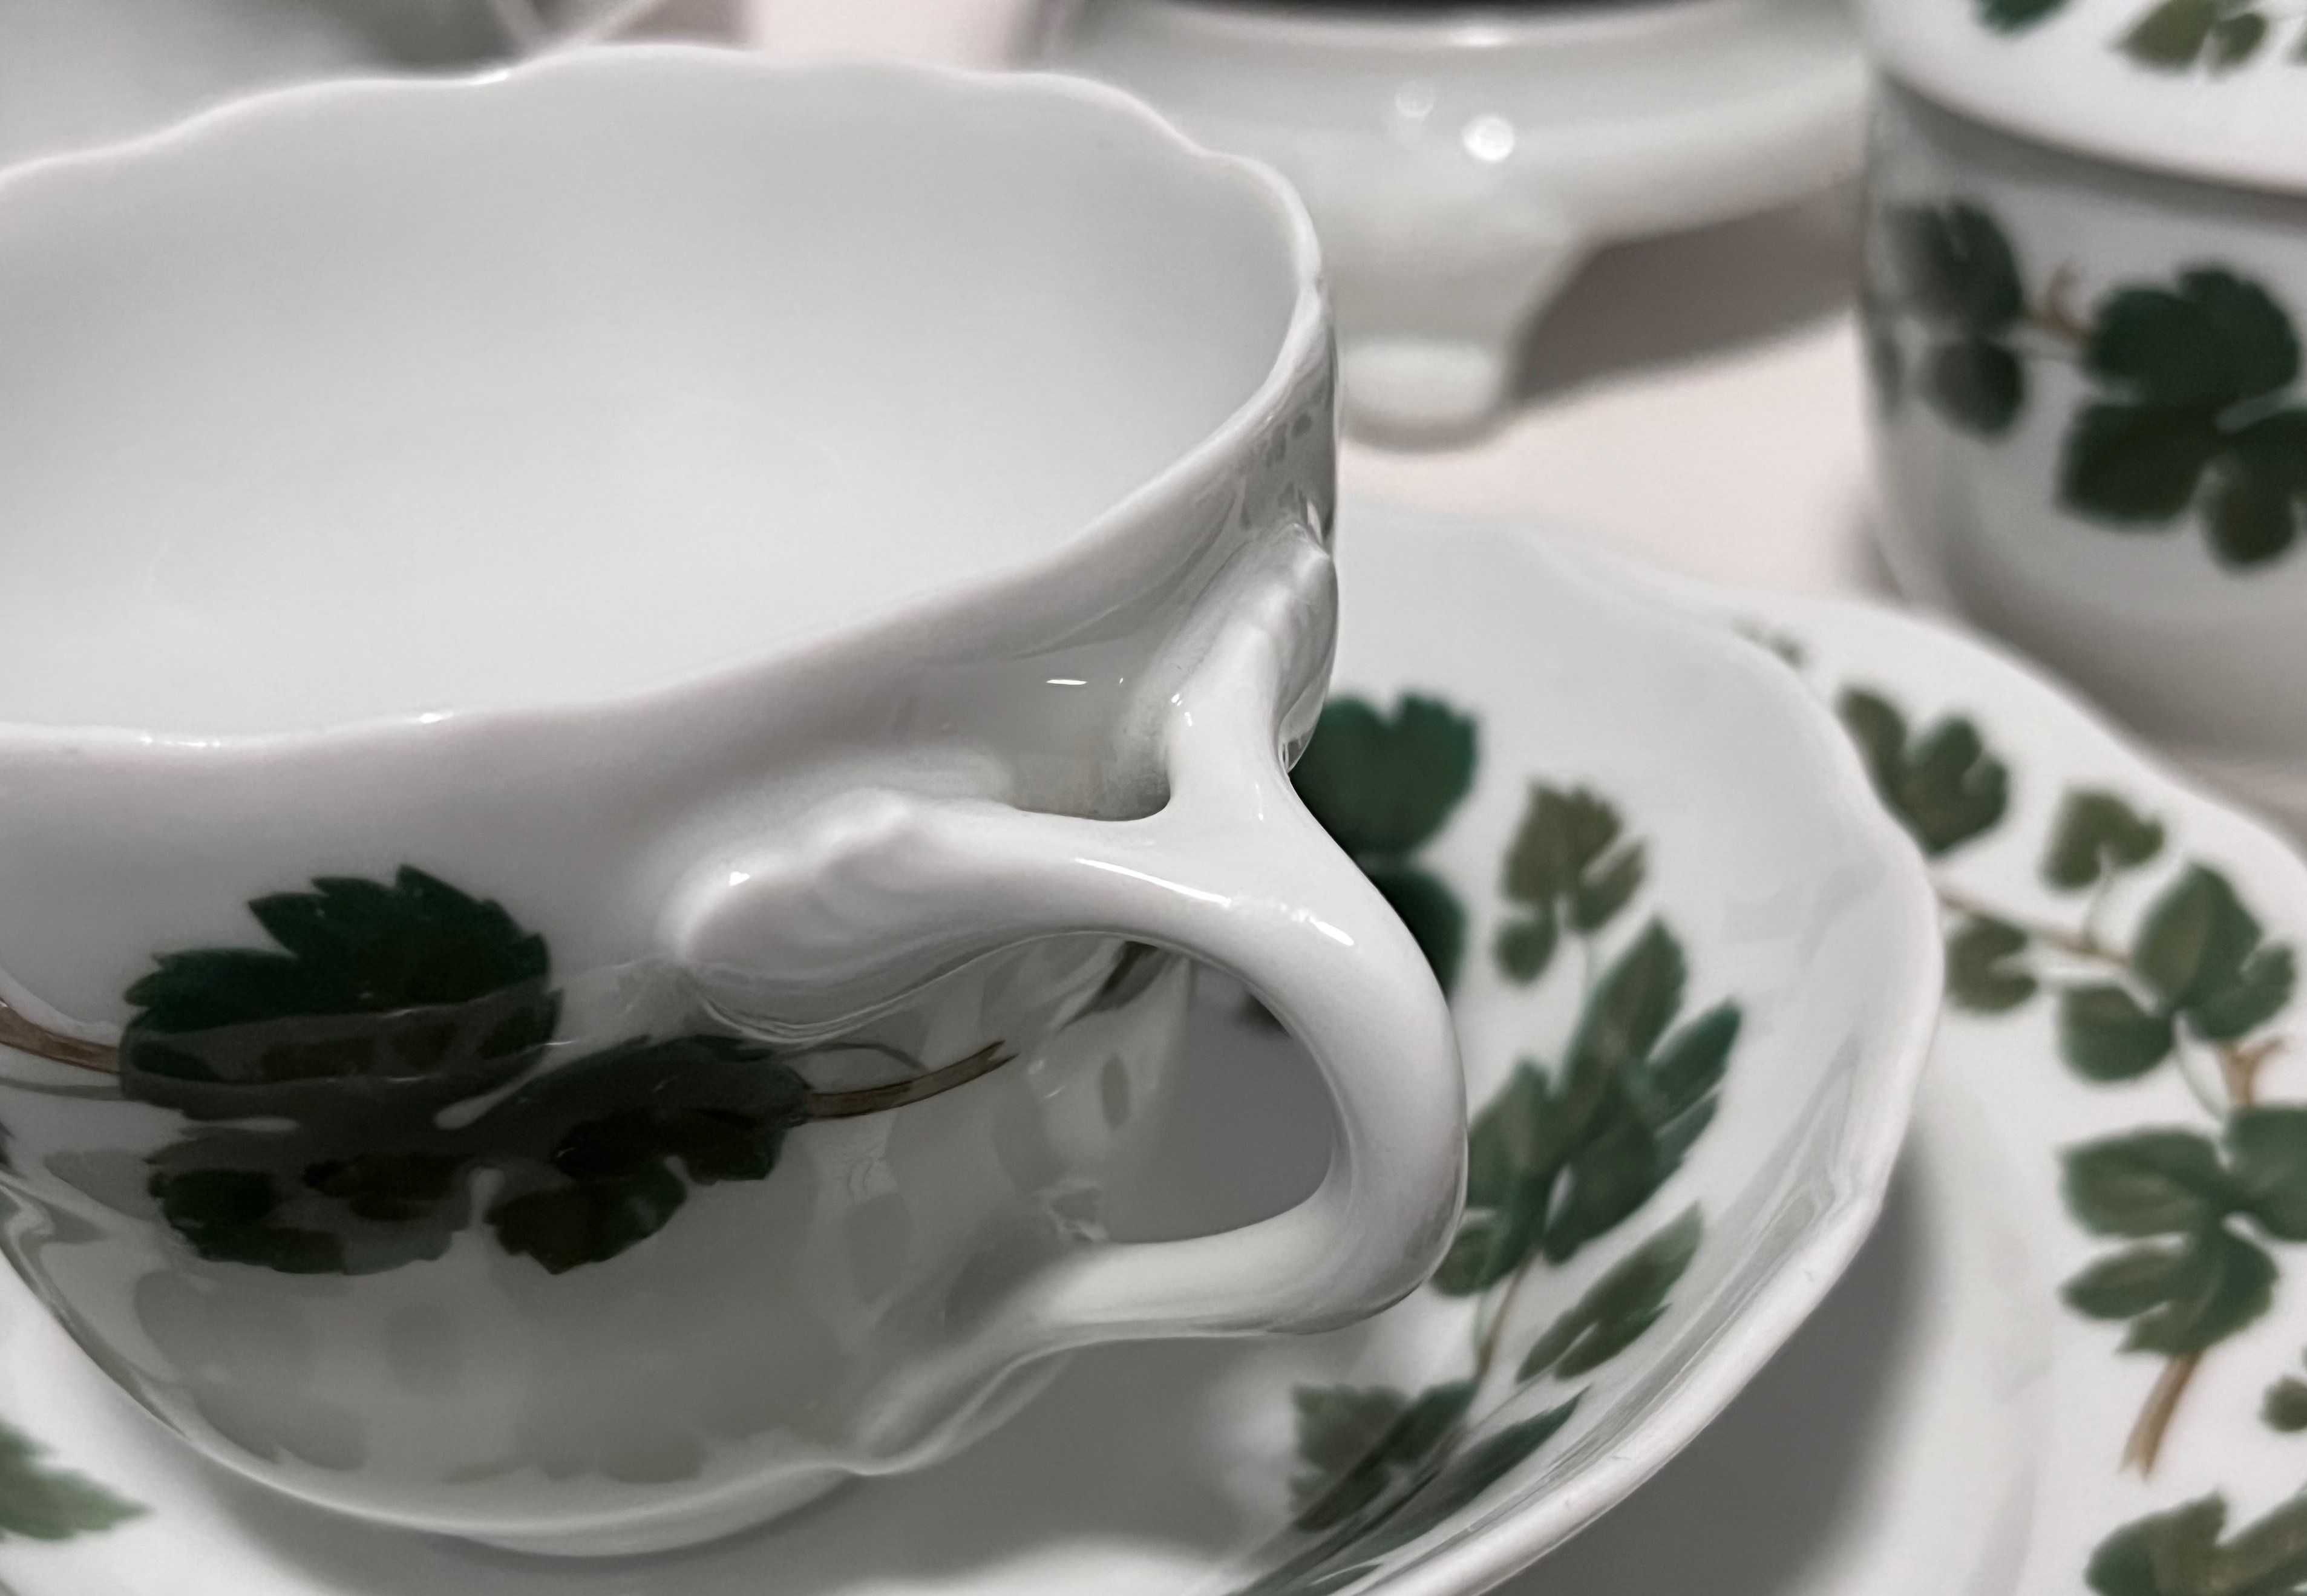 Zestaw herbata śniadaniowy porcelana Hutschenreuther "Weinlaub".